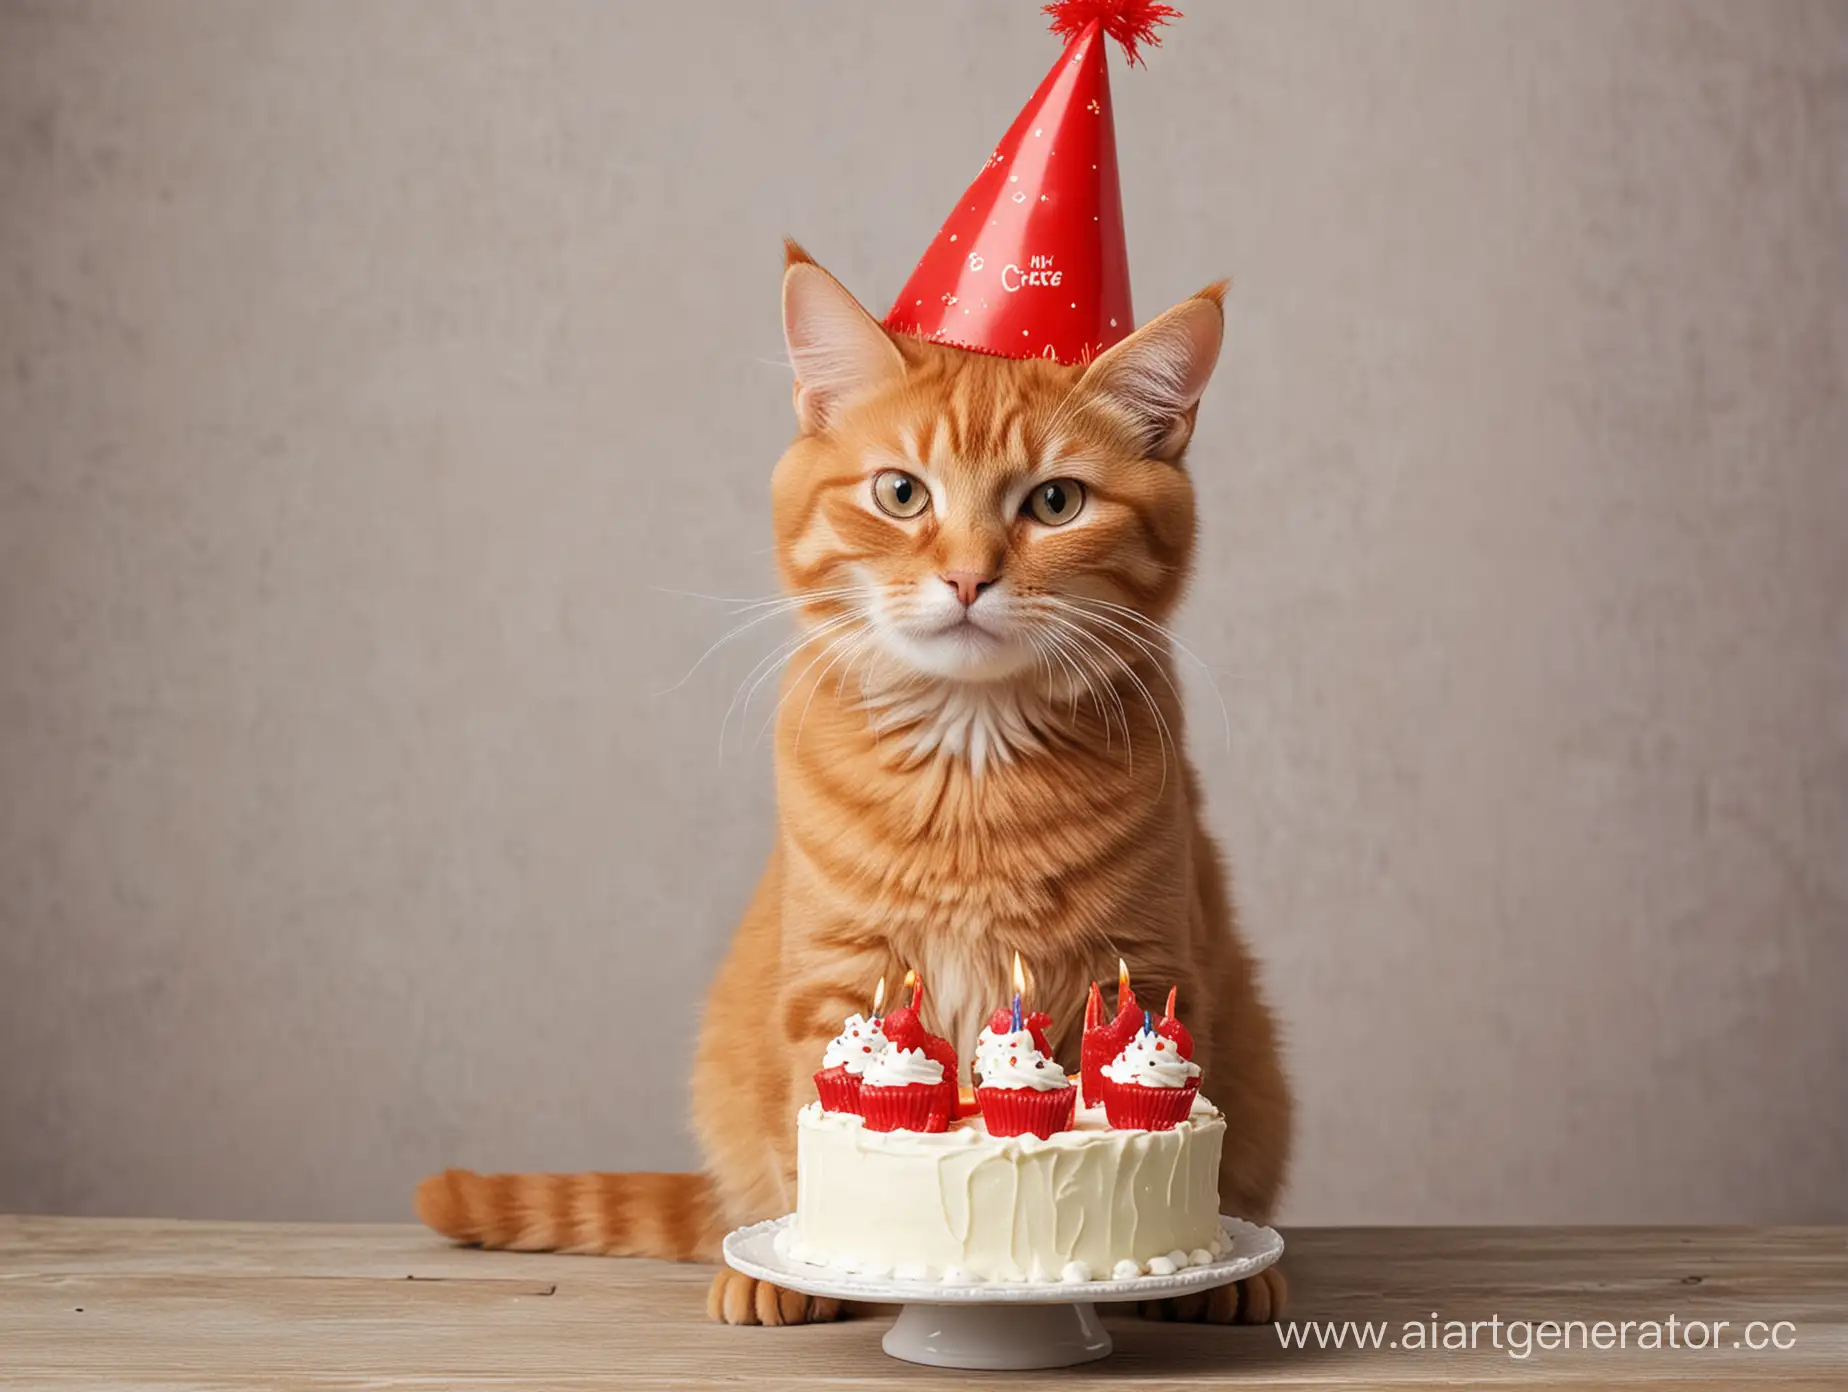 Рыжий,упитанный кот в колпаке и держащий в лапах торт,день рождение